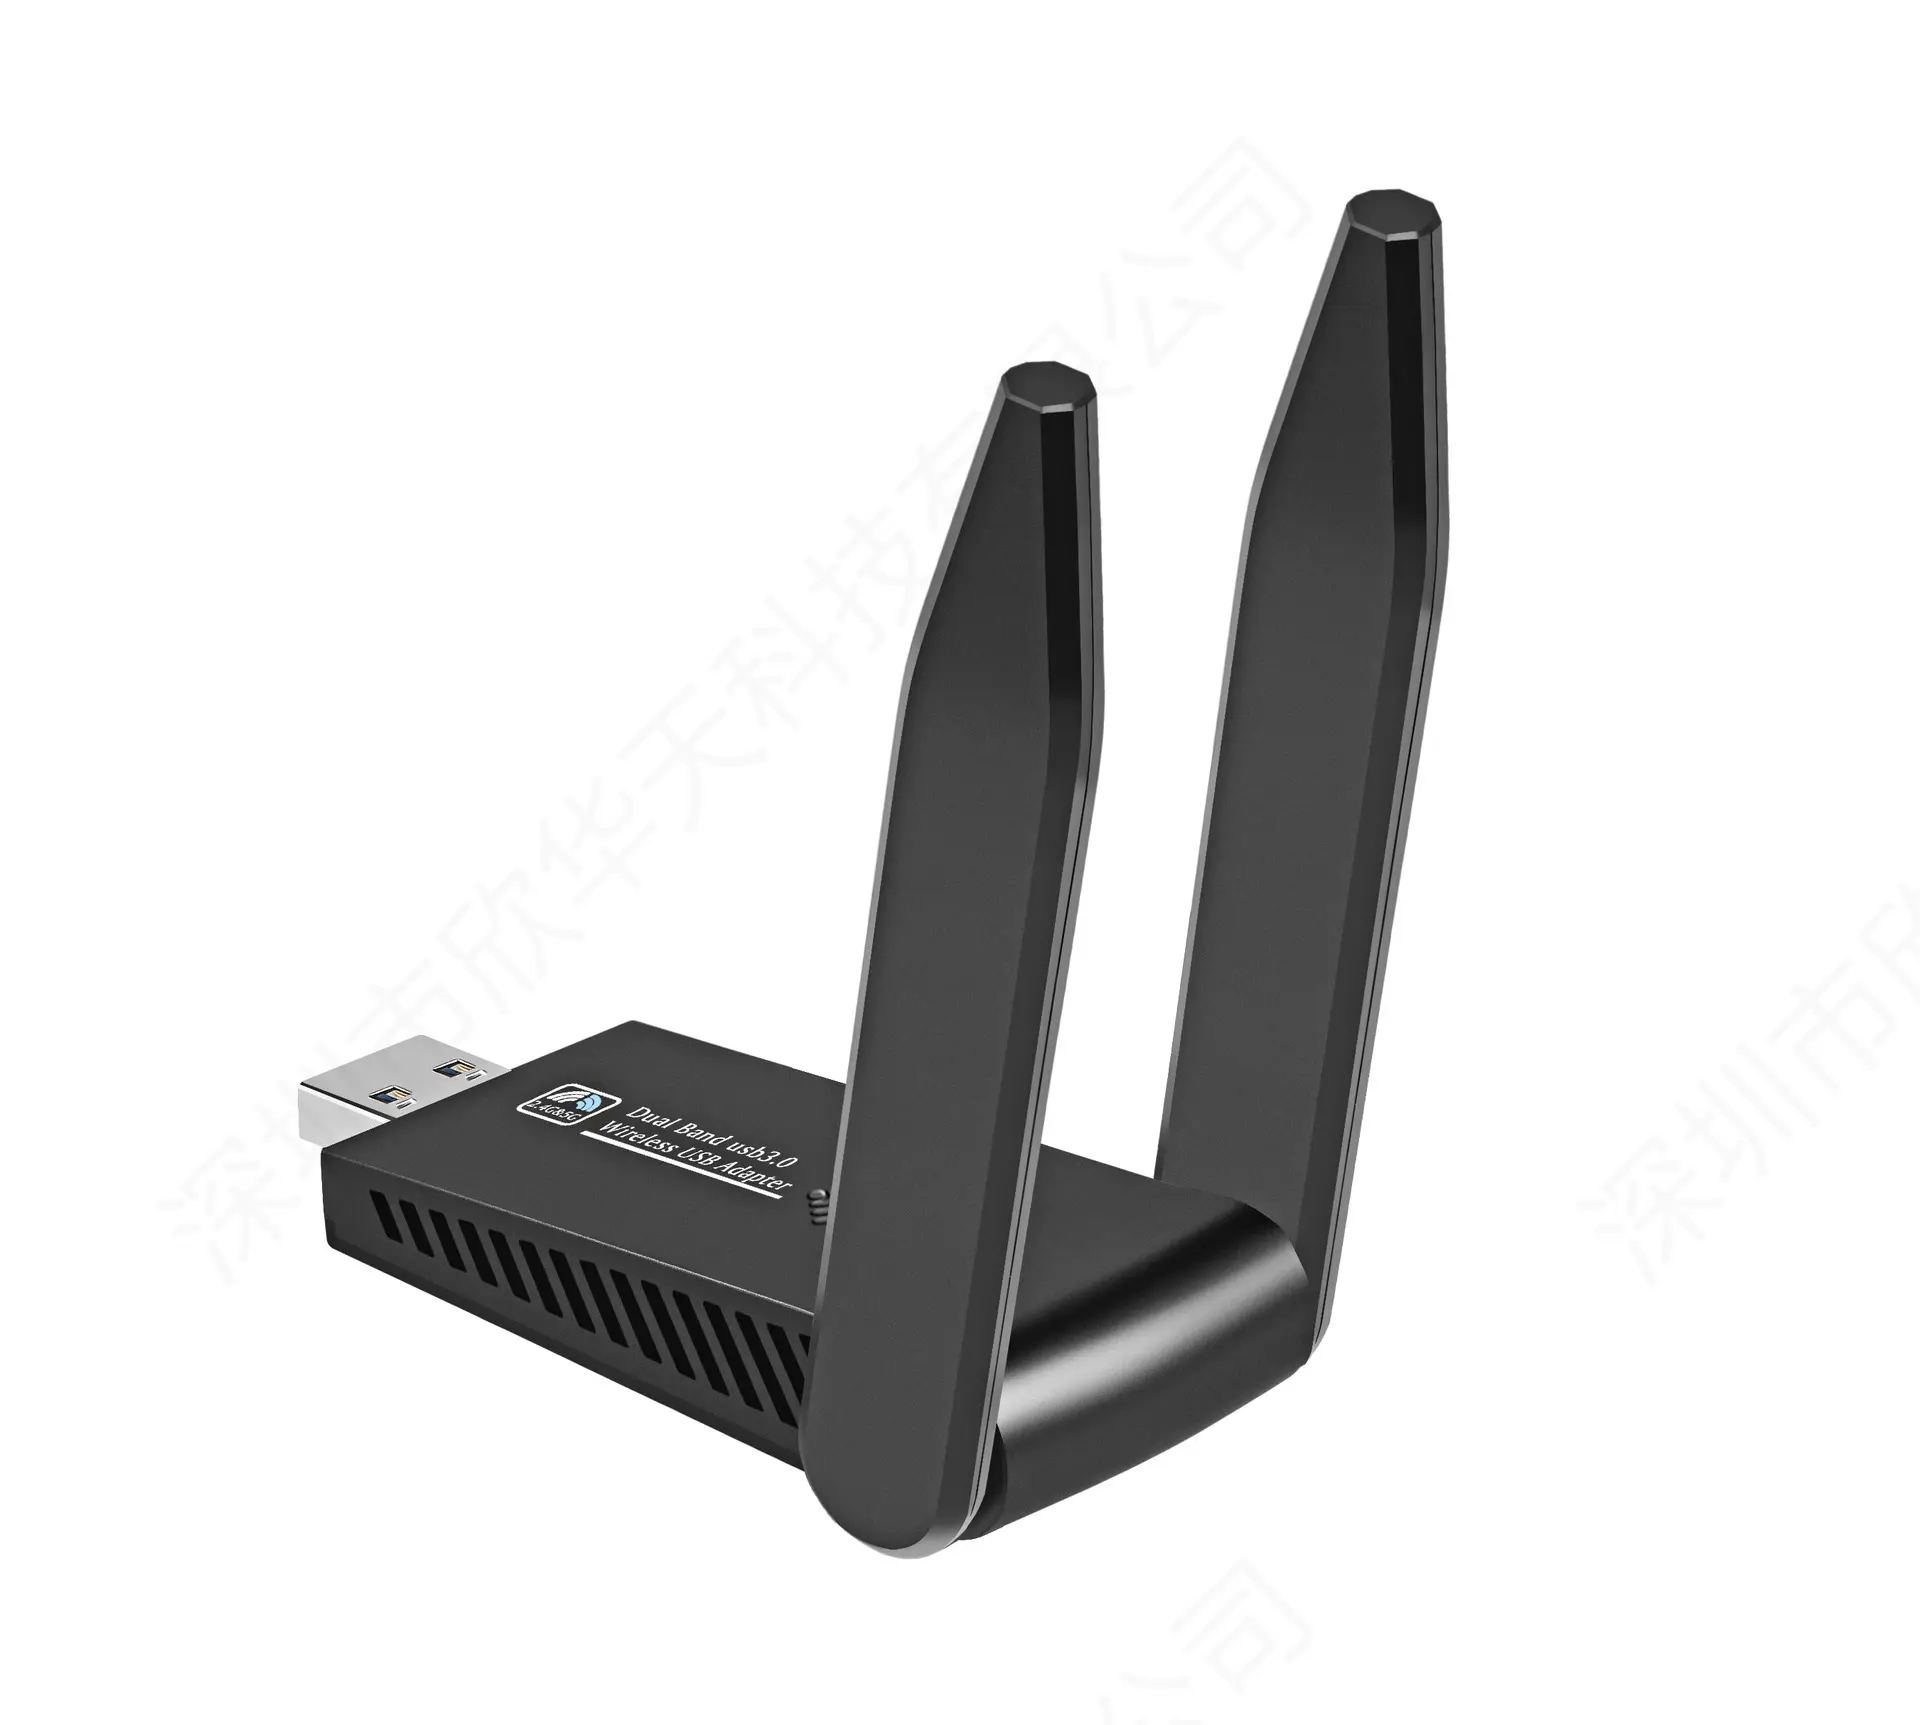 RTL8812 2.4G 5.8G WiFi 이더넷 무선 동글 USB 와이파이 어댑터 1300Mbps 네트워크 카드